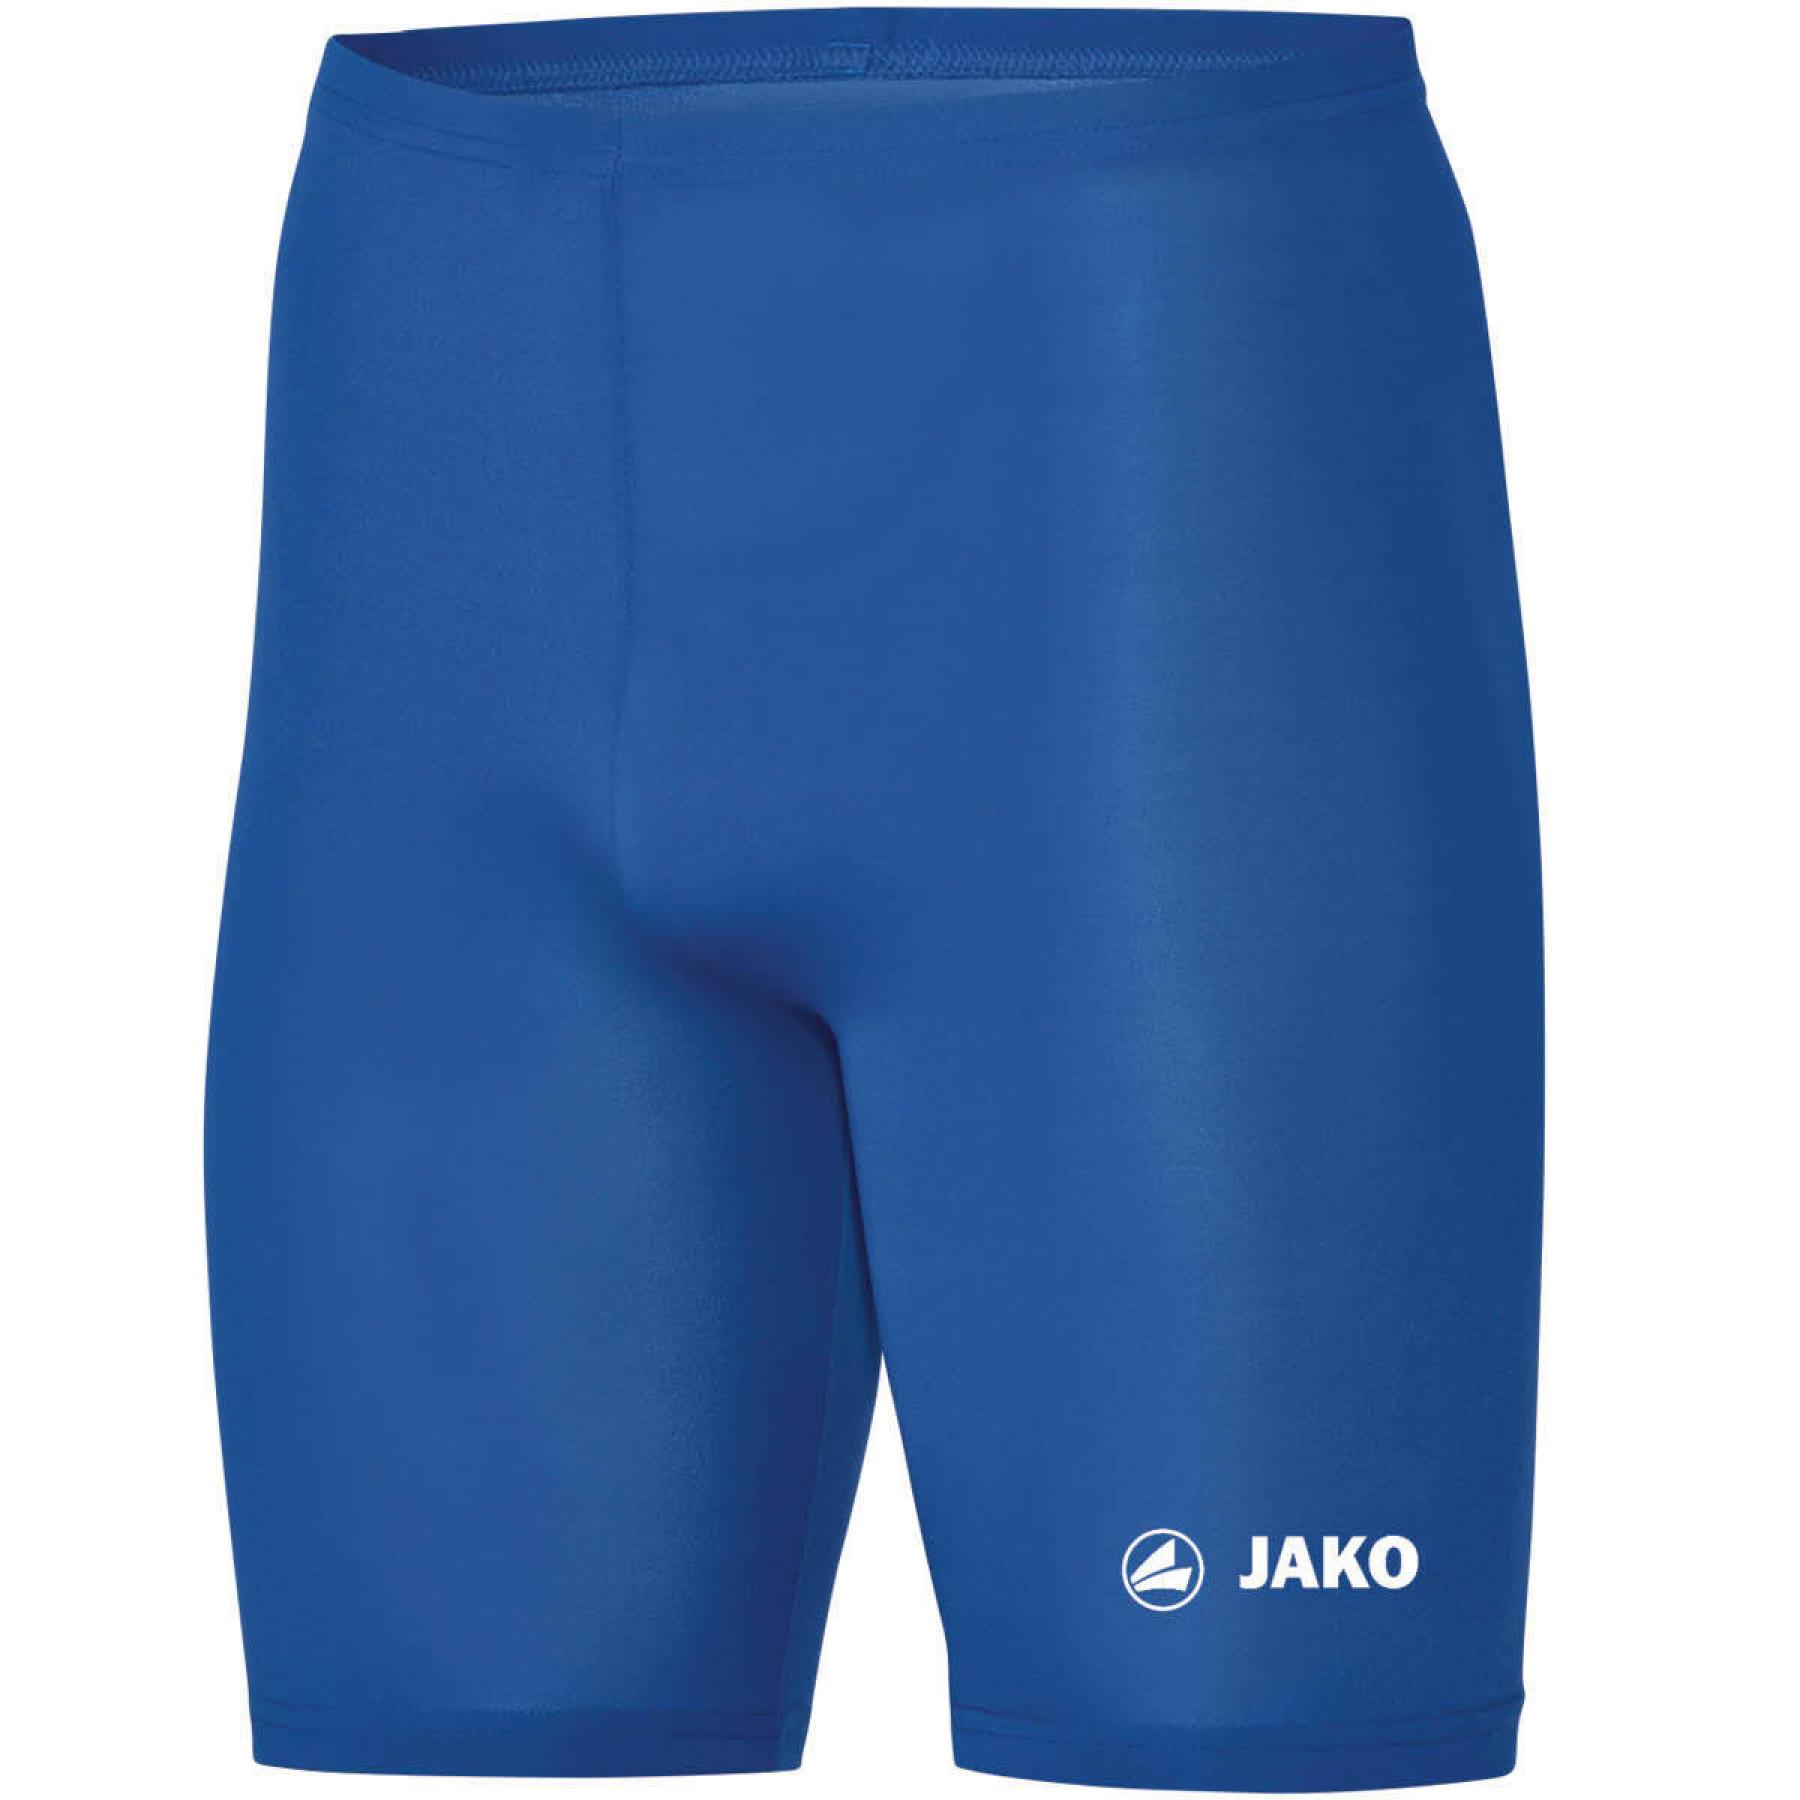 Kinder shorts Jako Basic 2.0